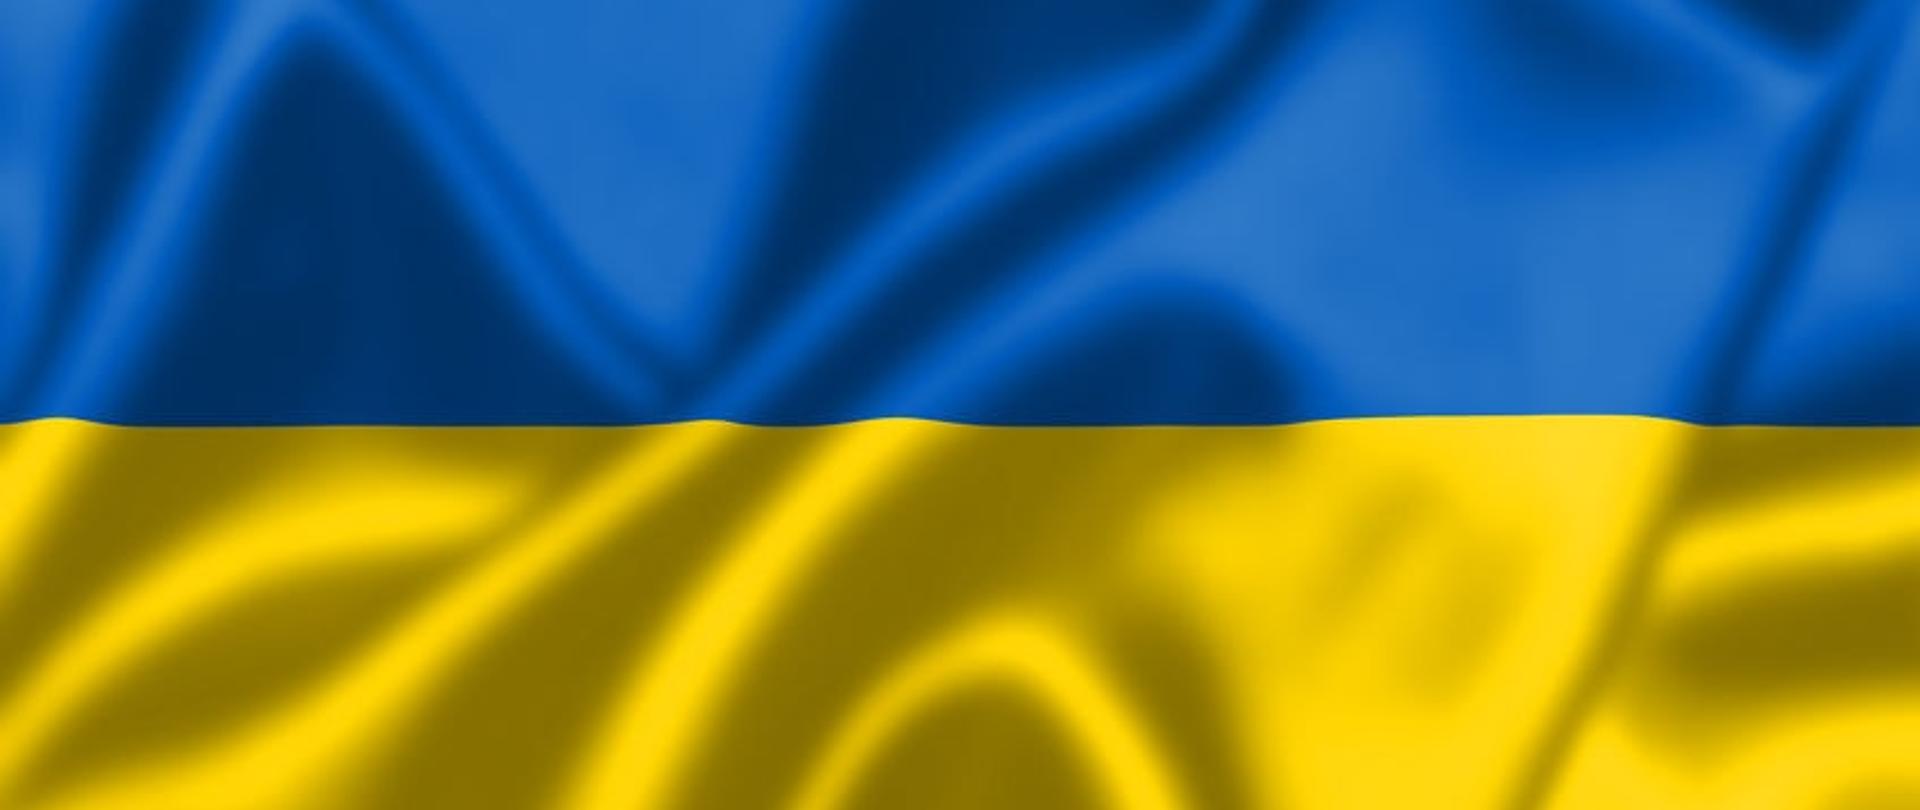 Zdjęcie przedstawia flagę państwową Ukrainy